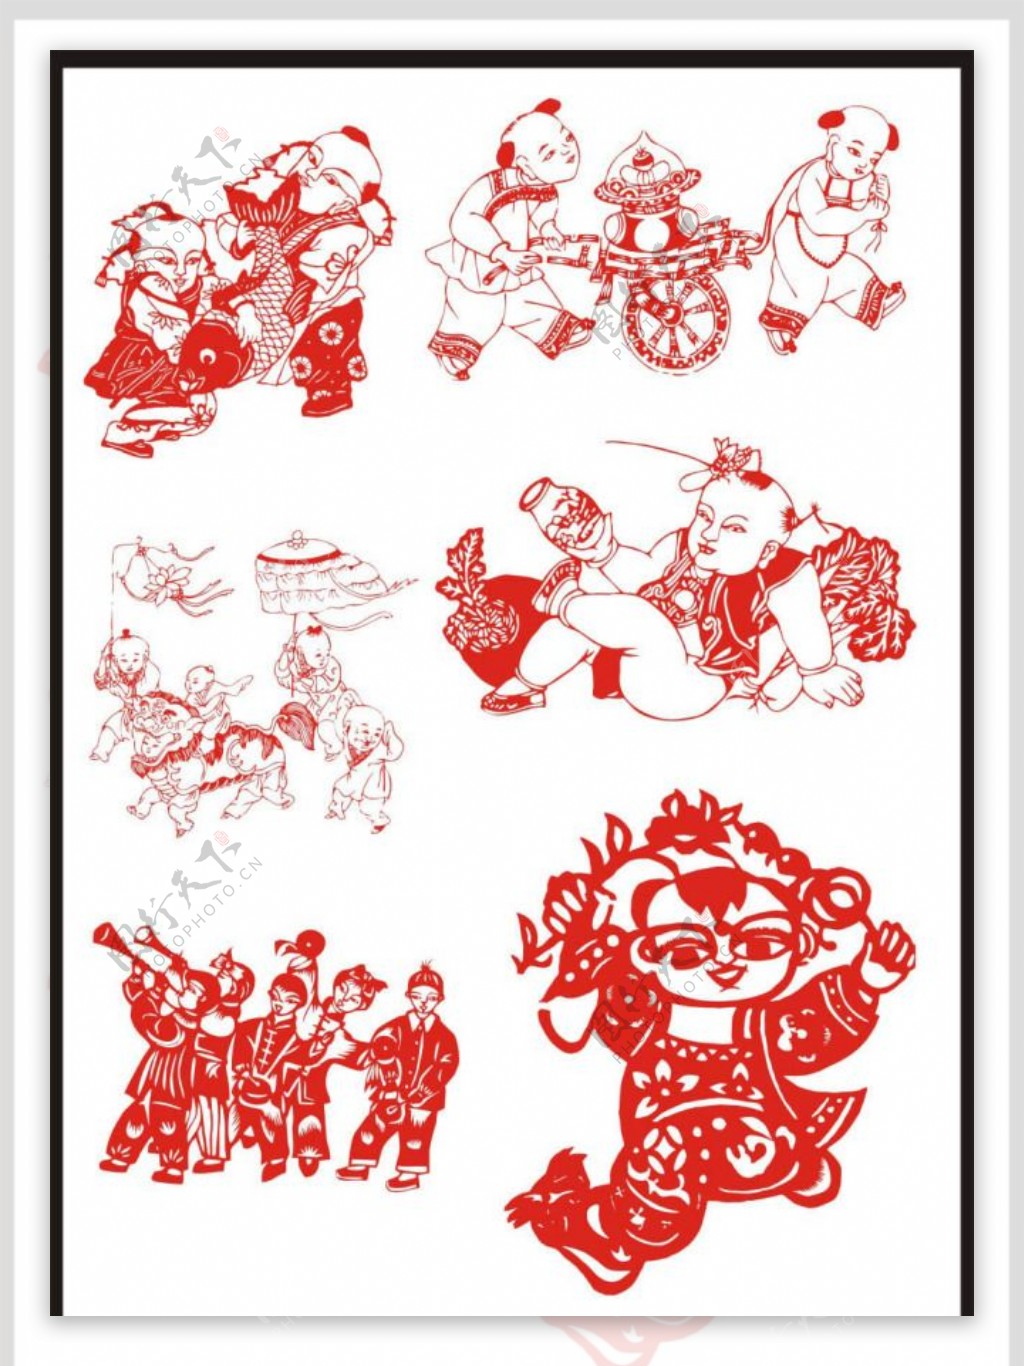 中国传统剪纸人物矢量素材